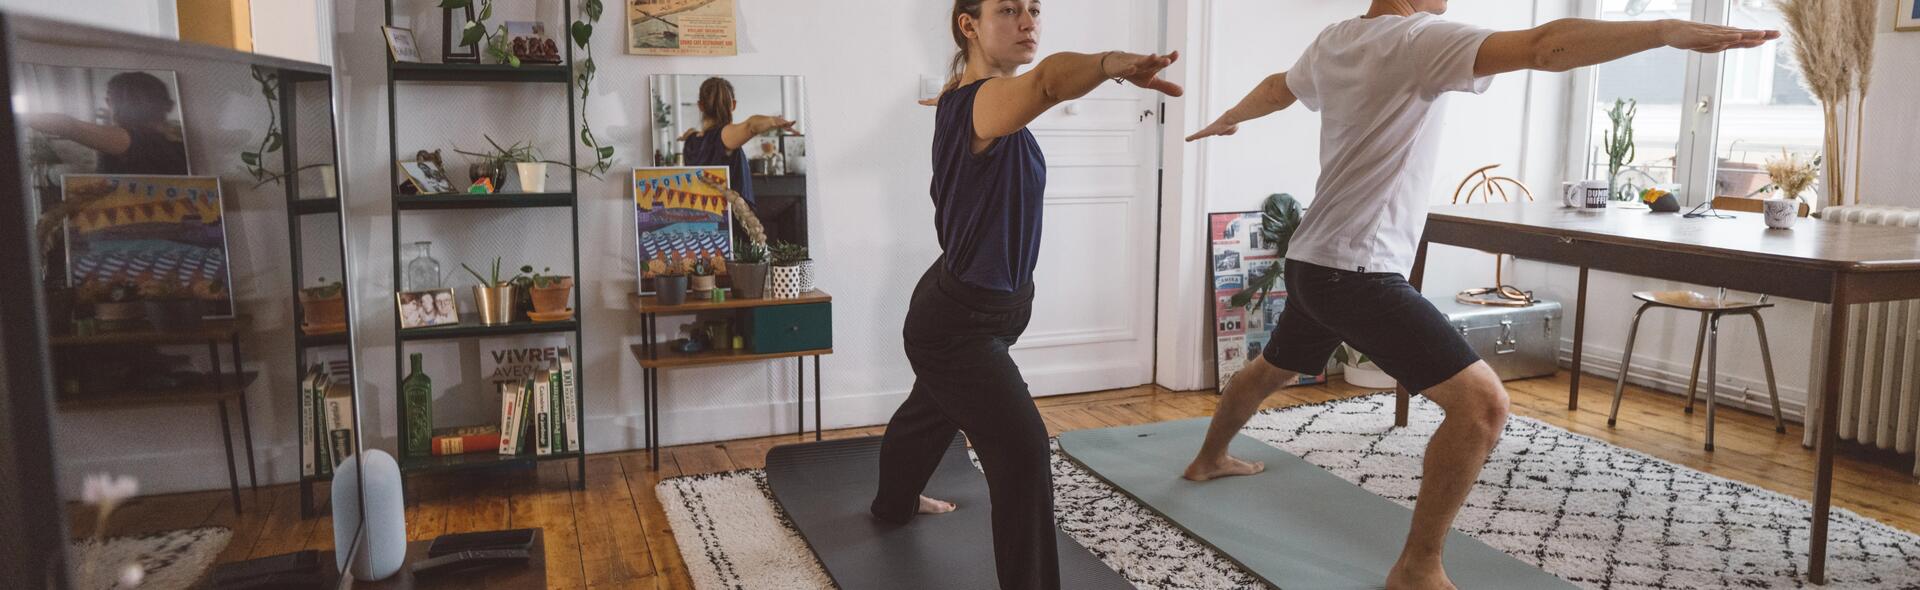 Yoga para iniciantes: 7 benefícios e como começar a praticar